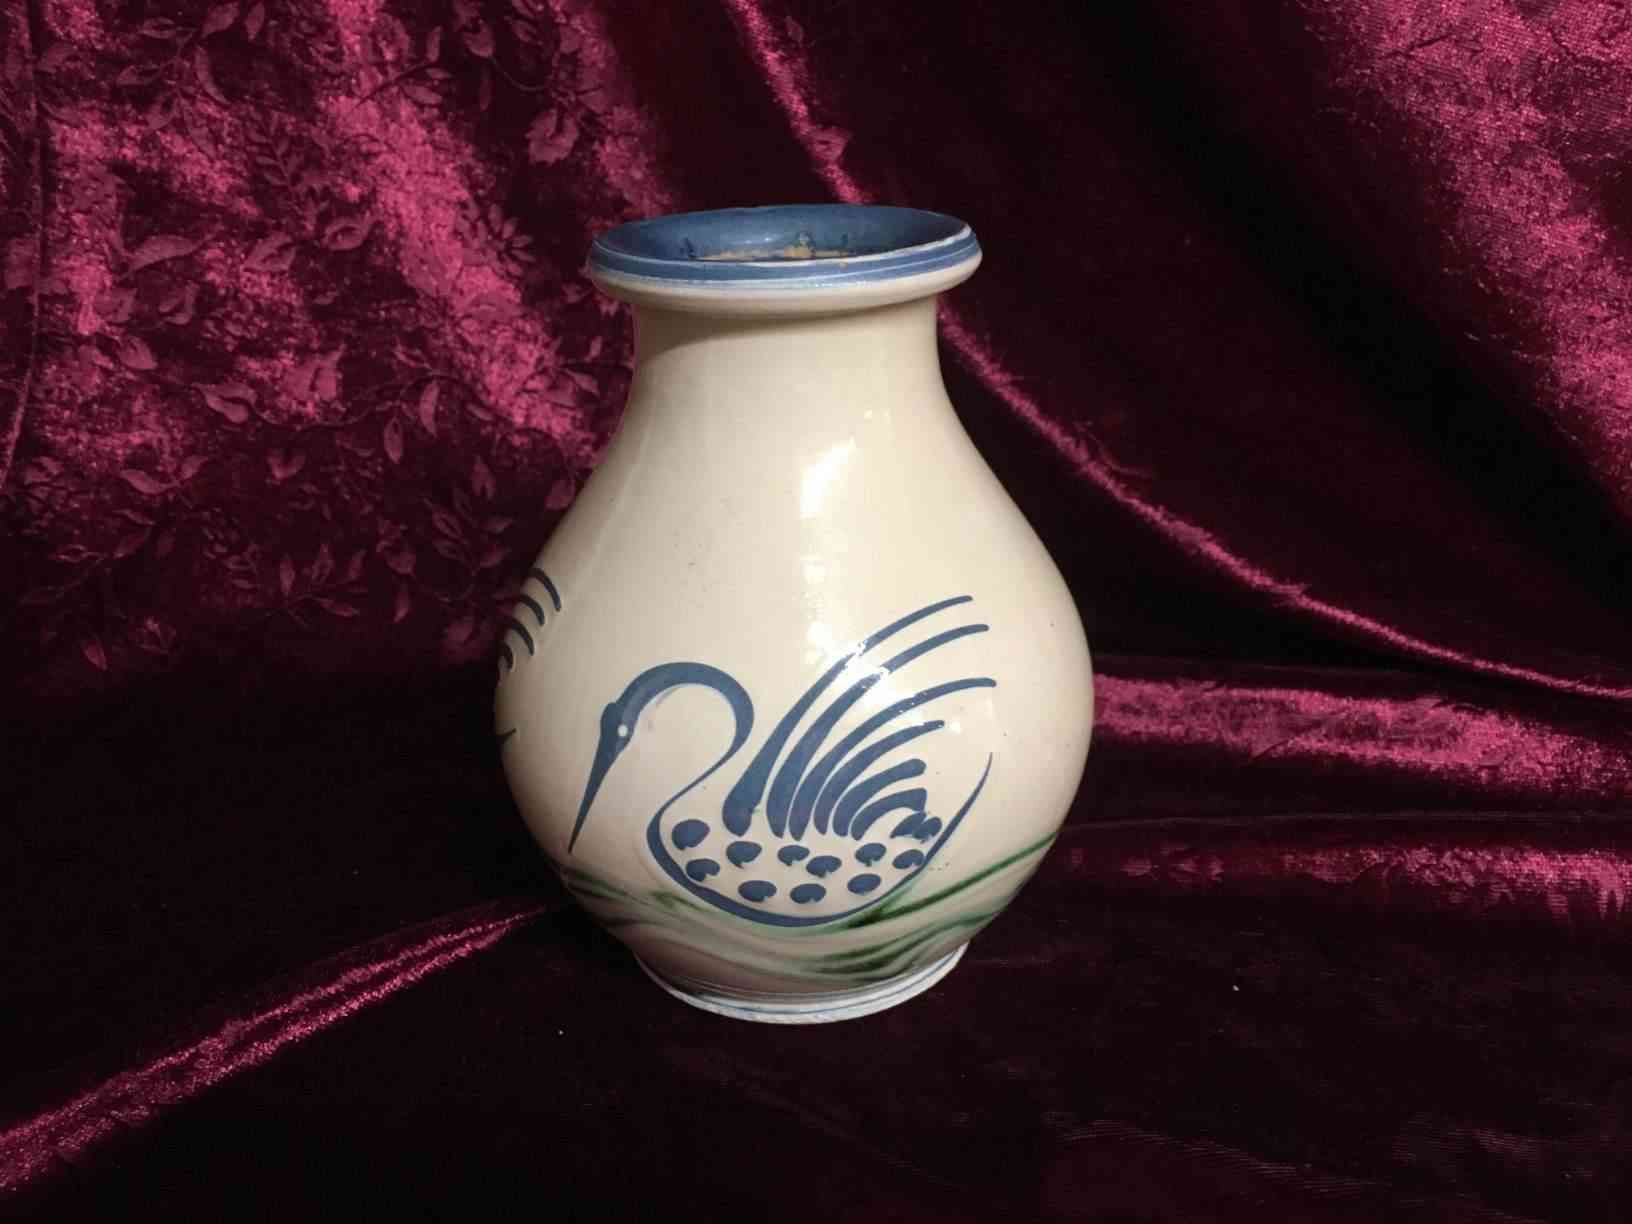 Kähler - Vase med blå svane på lys bund i perfekt stand. Bemalet af Eva Haase ca. 1940. Virkelig elegant i simpelt udtryksform. Pris: 1.500,- Kr.